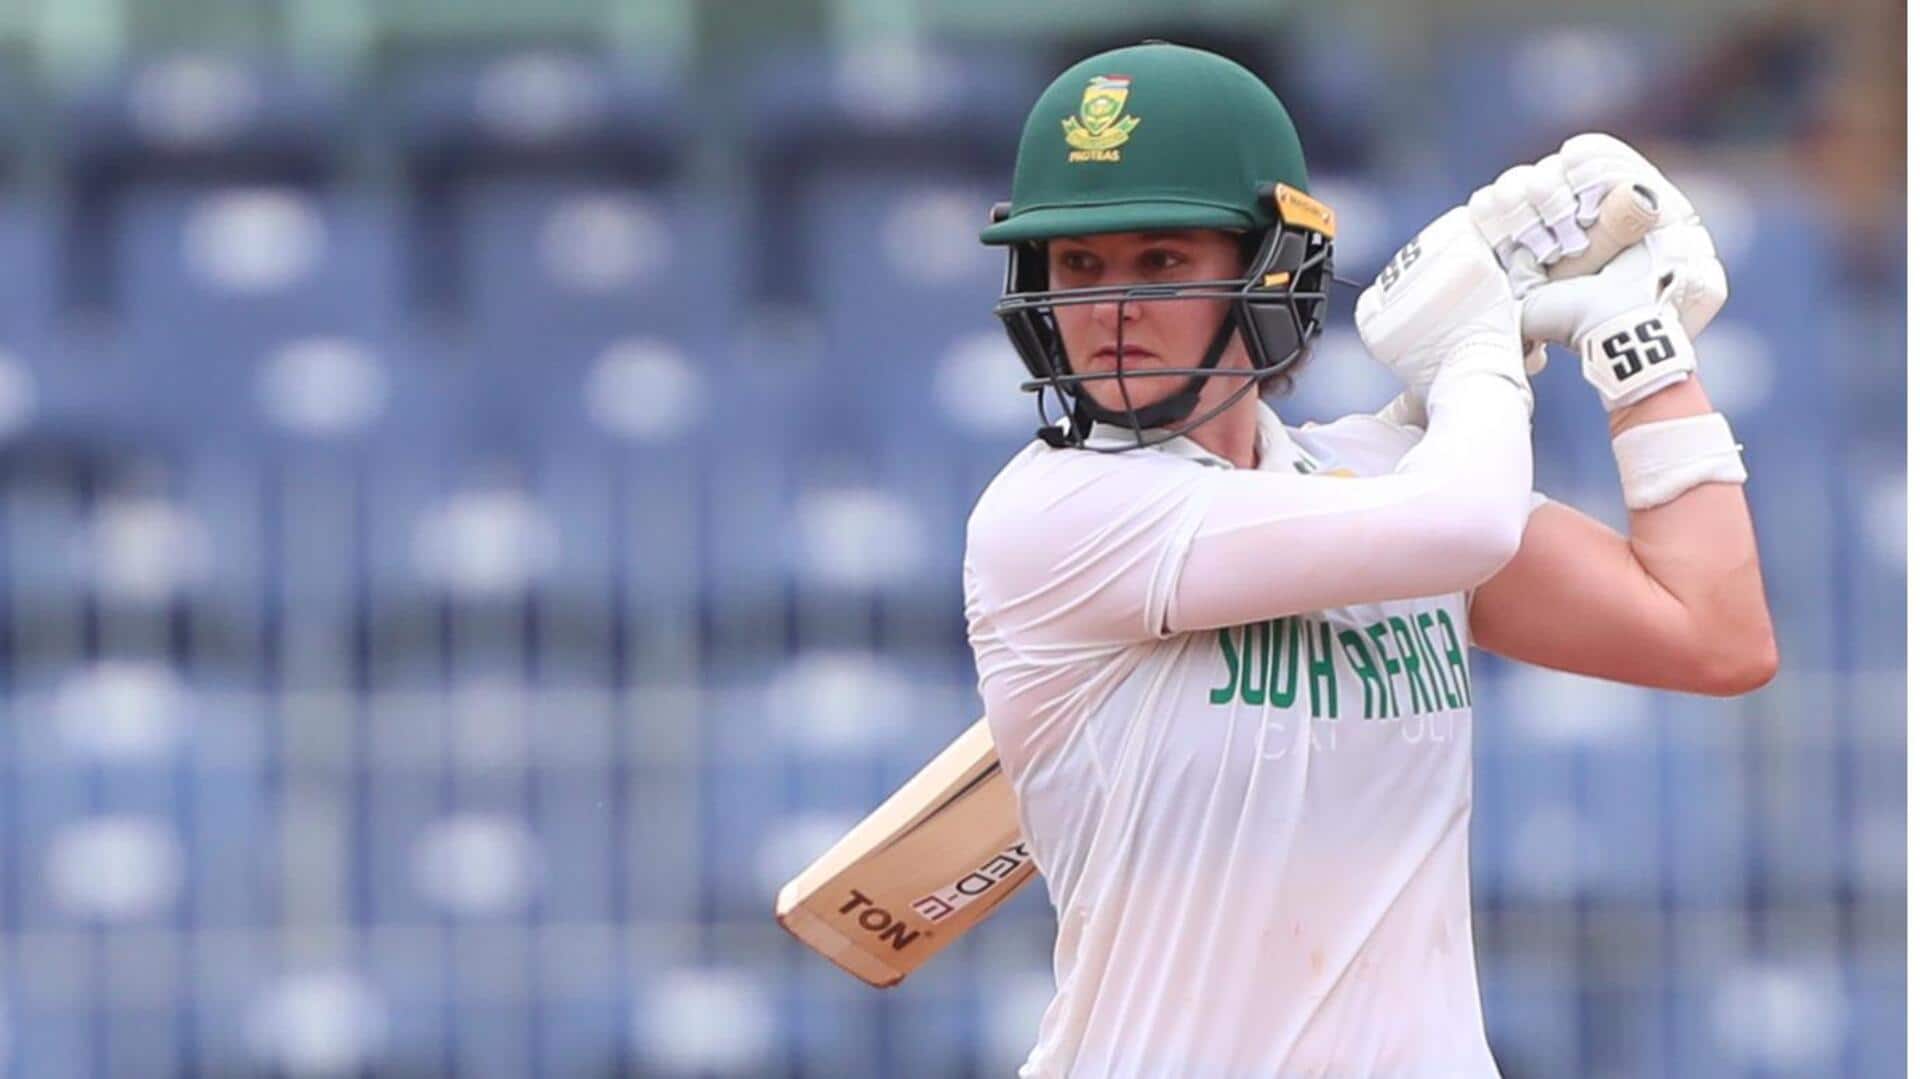 भारत बनाम दक्षिण अफ्रीका: लौरा वोल्वार्ड्ट ने टेस्ट में लगाया अपना पहला शतक, जानिए आंकड़े